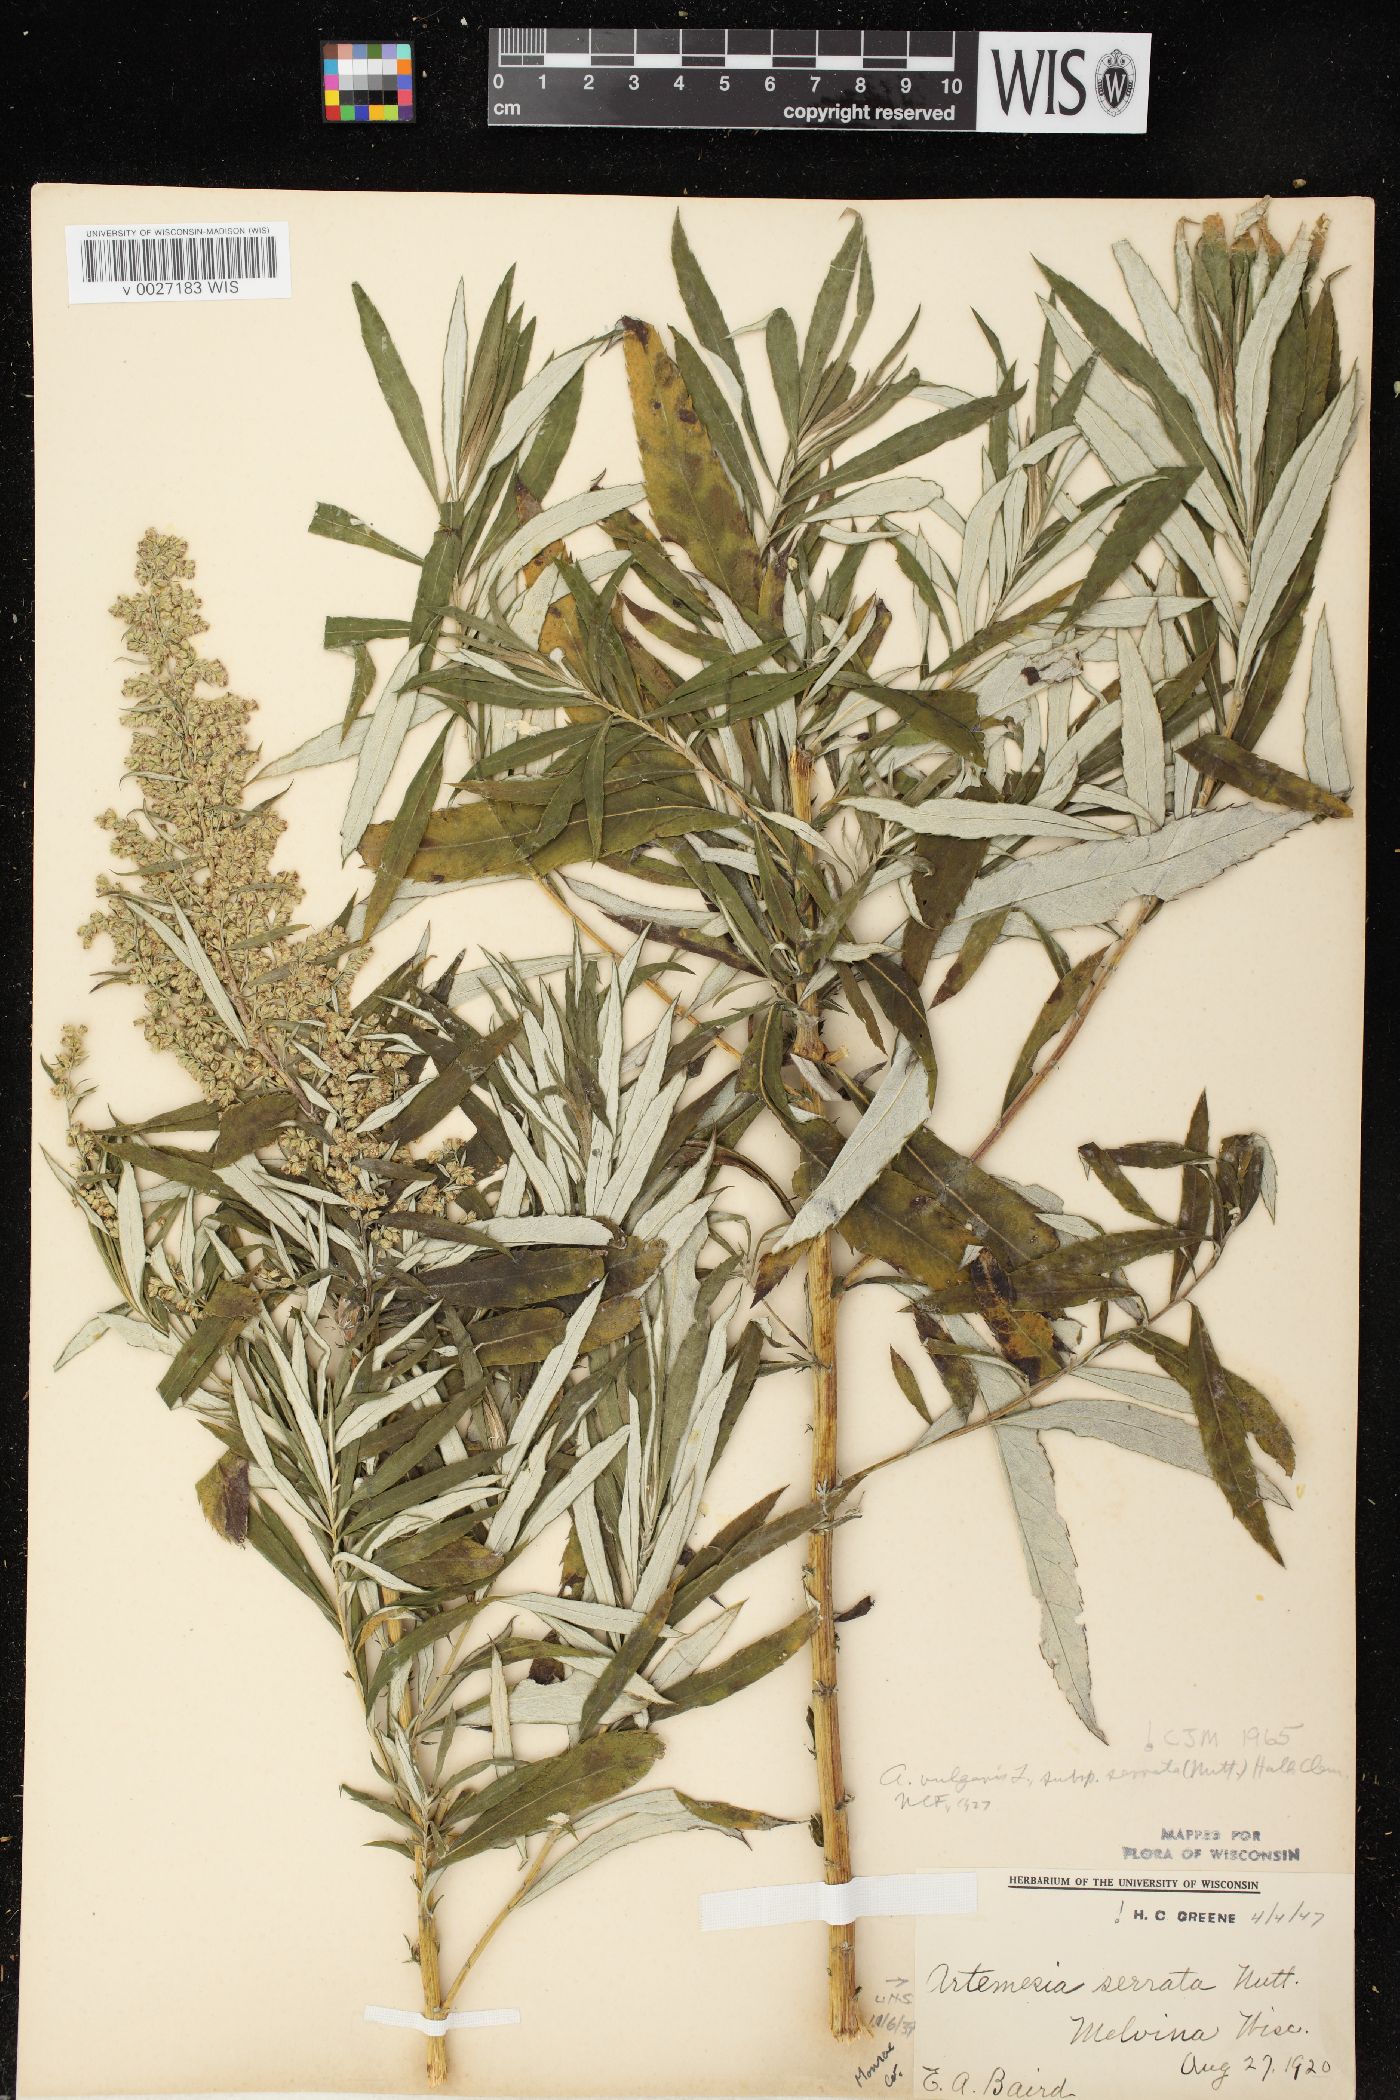 Artemisia serrata image